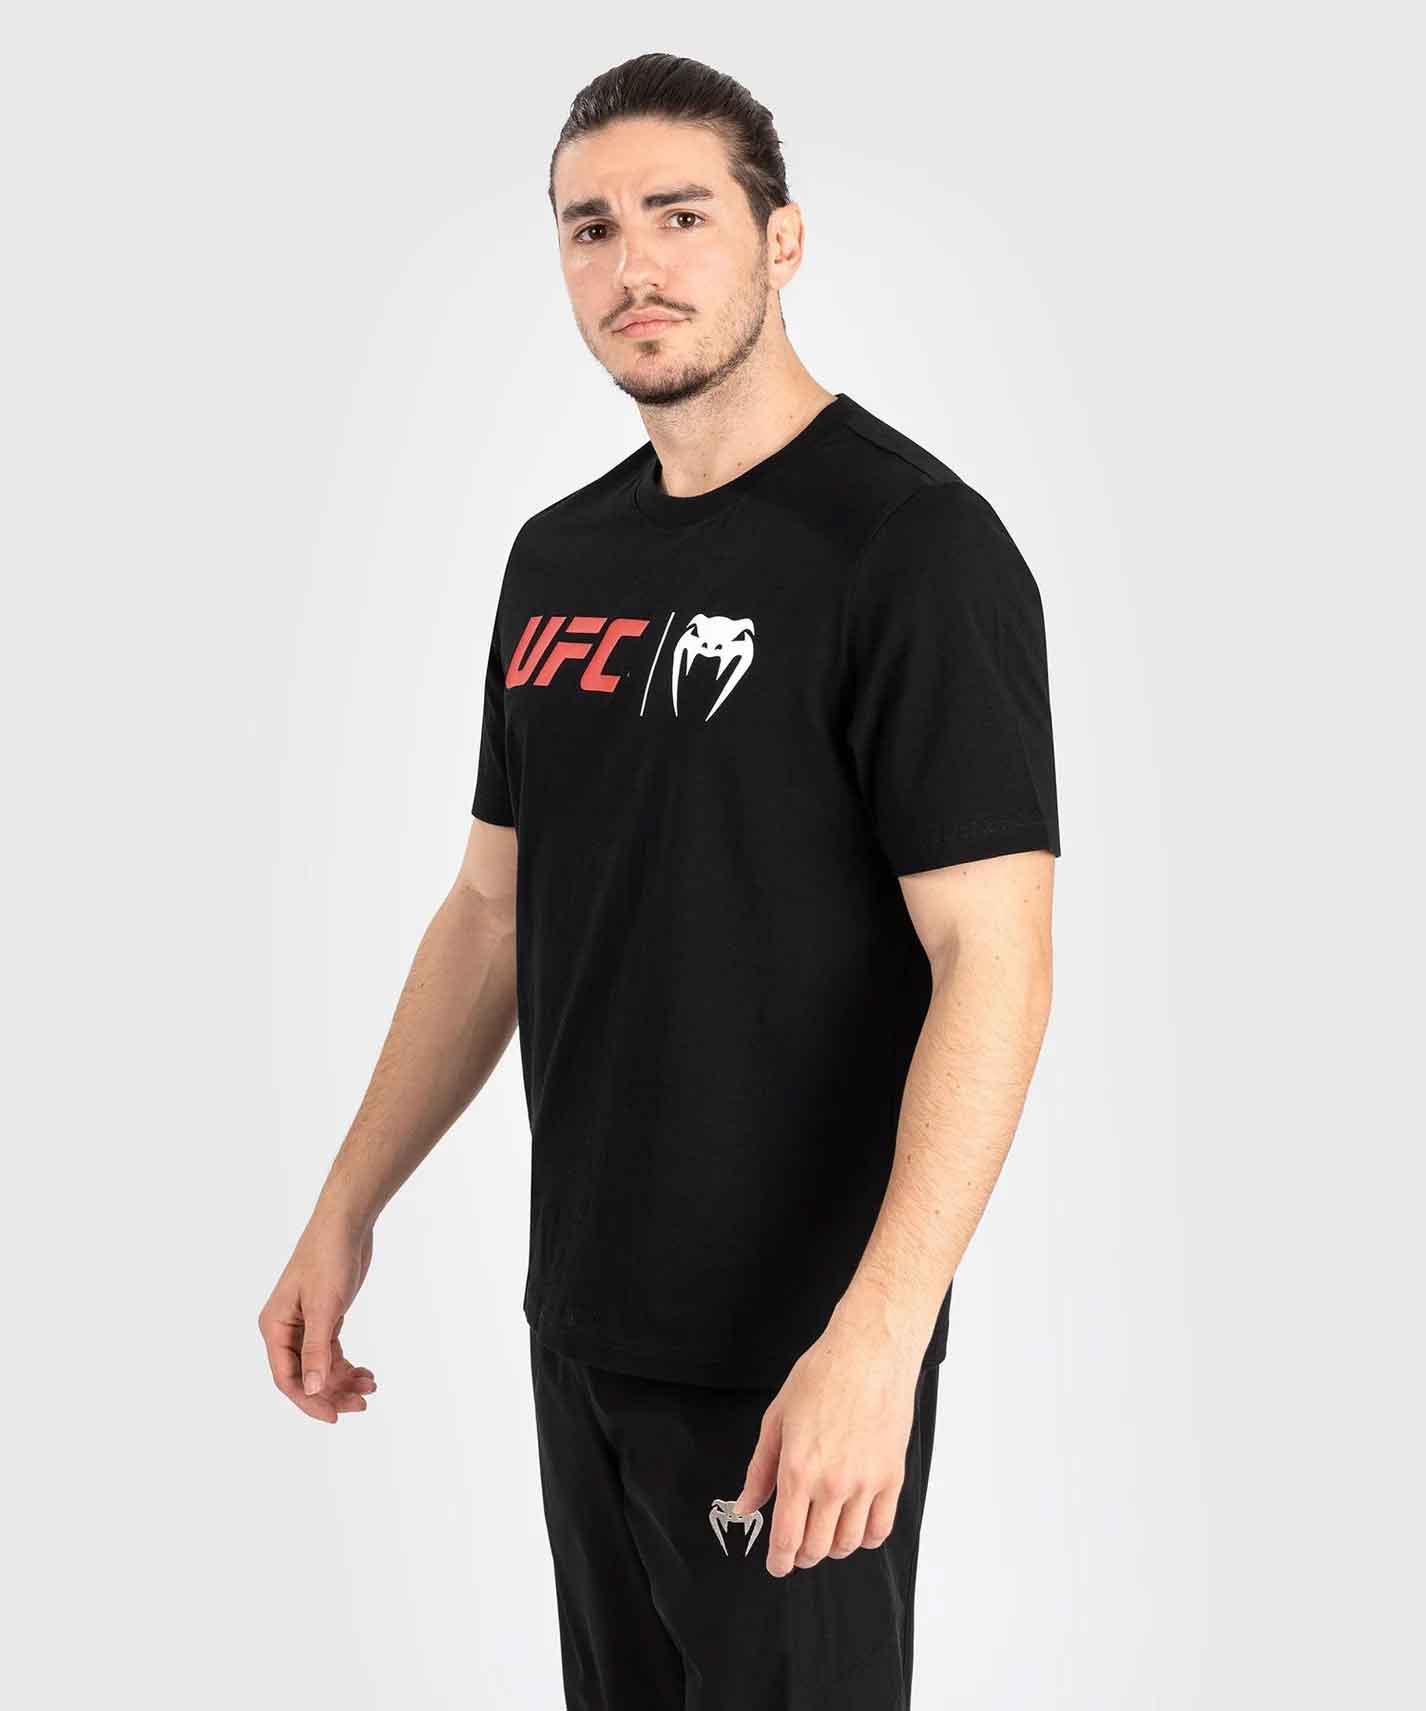 VENUM／ヴェナム　Tシャツ　　UFC Venum Classic T-Shirt／UFC VENUM クラシック Tシャツ（黒）